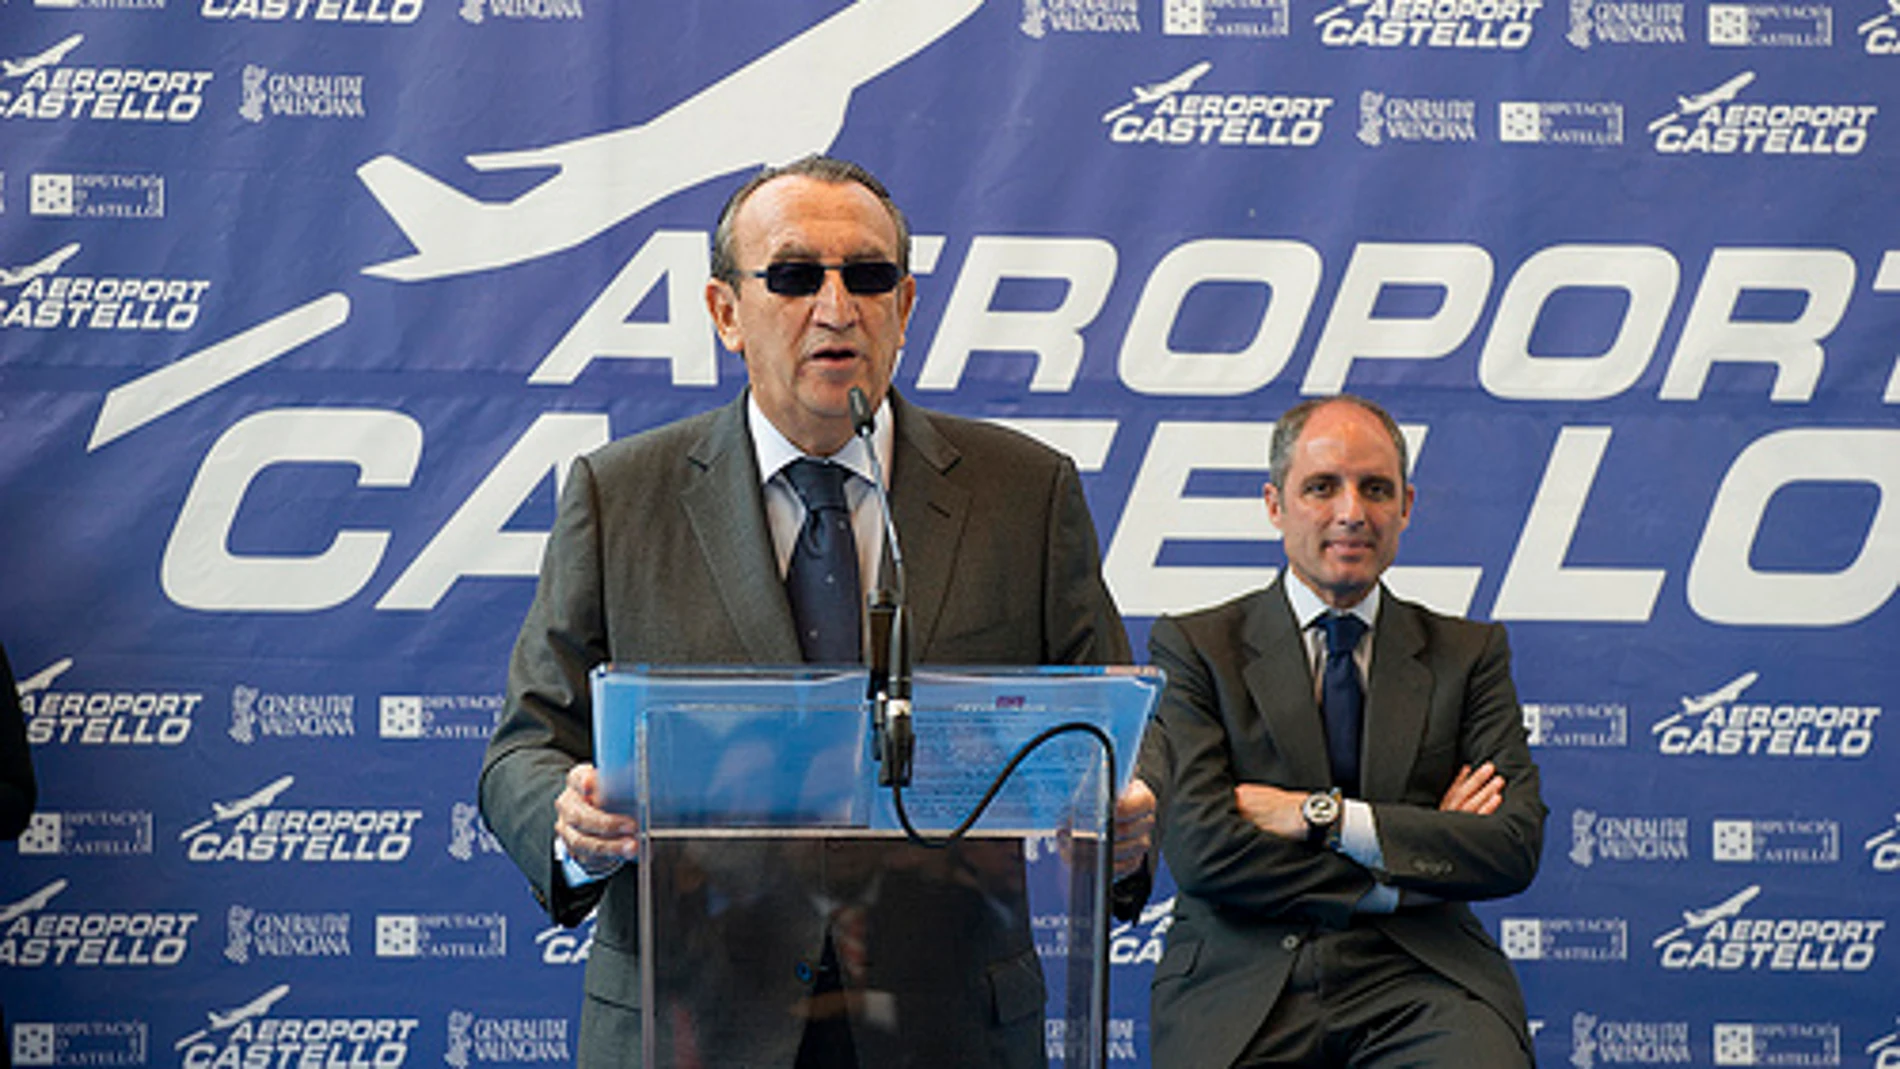 Carlos Fabra inaugura el aeropuerto de Castellón